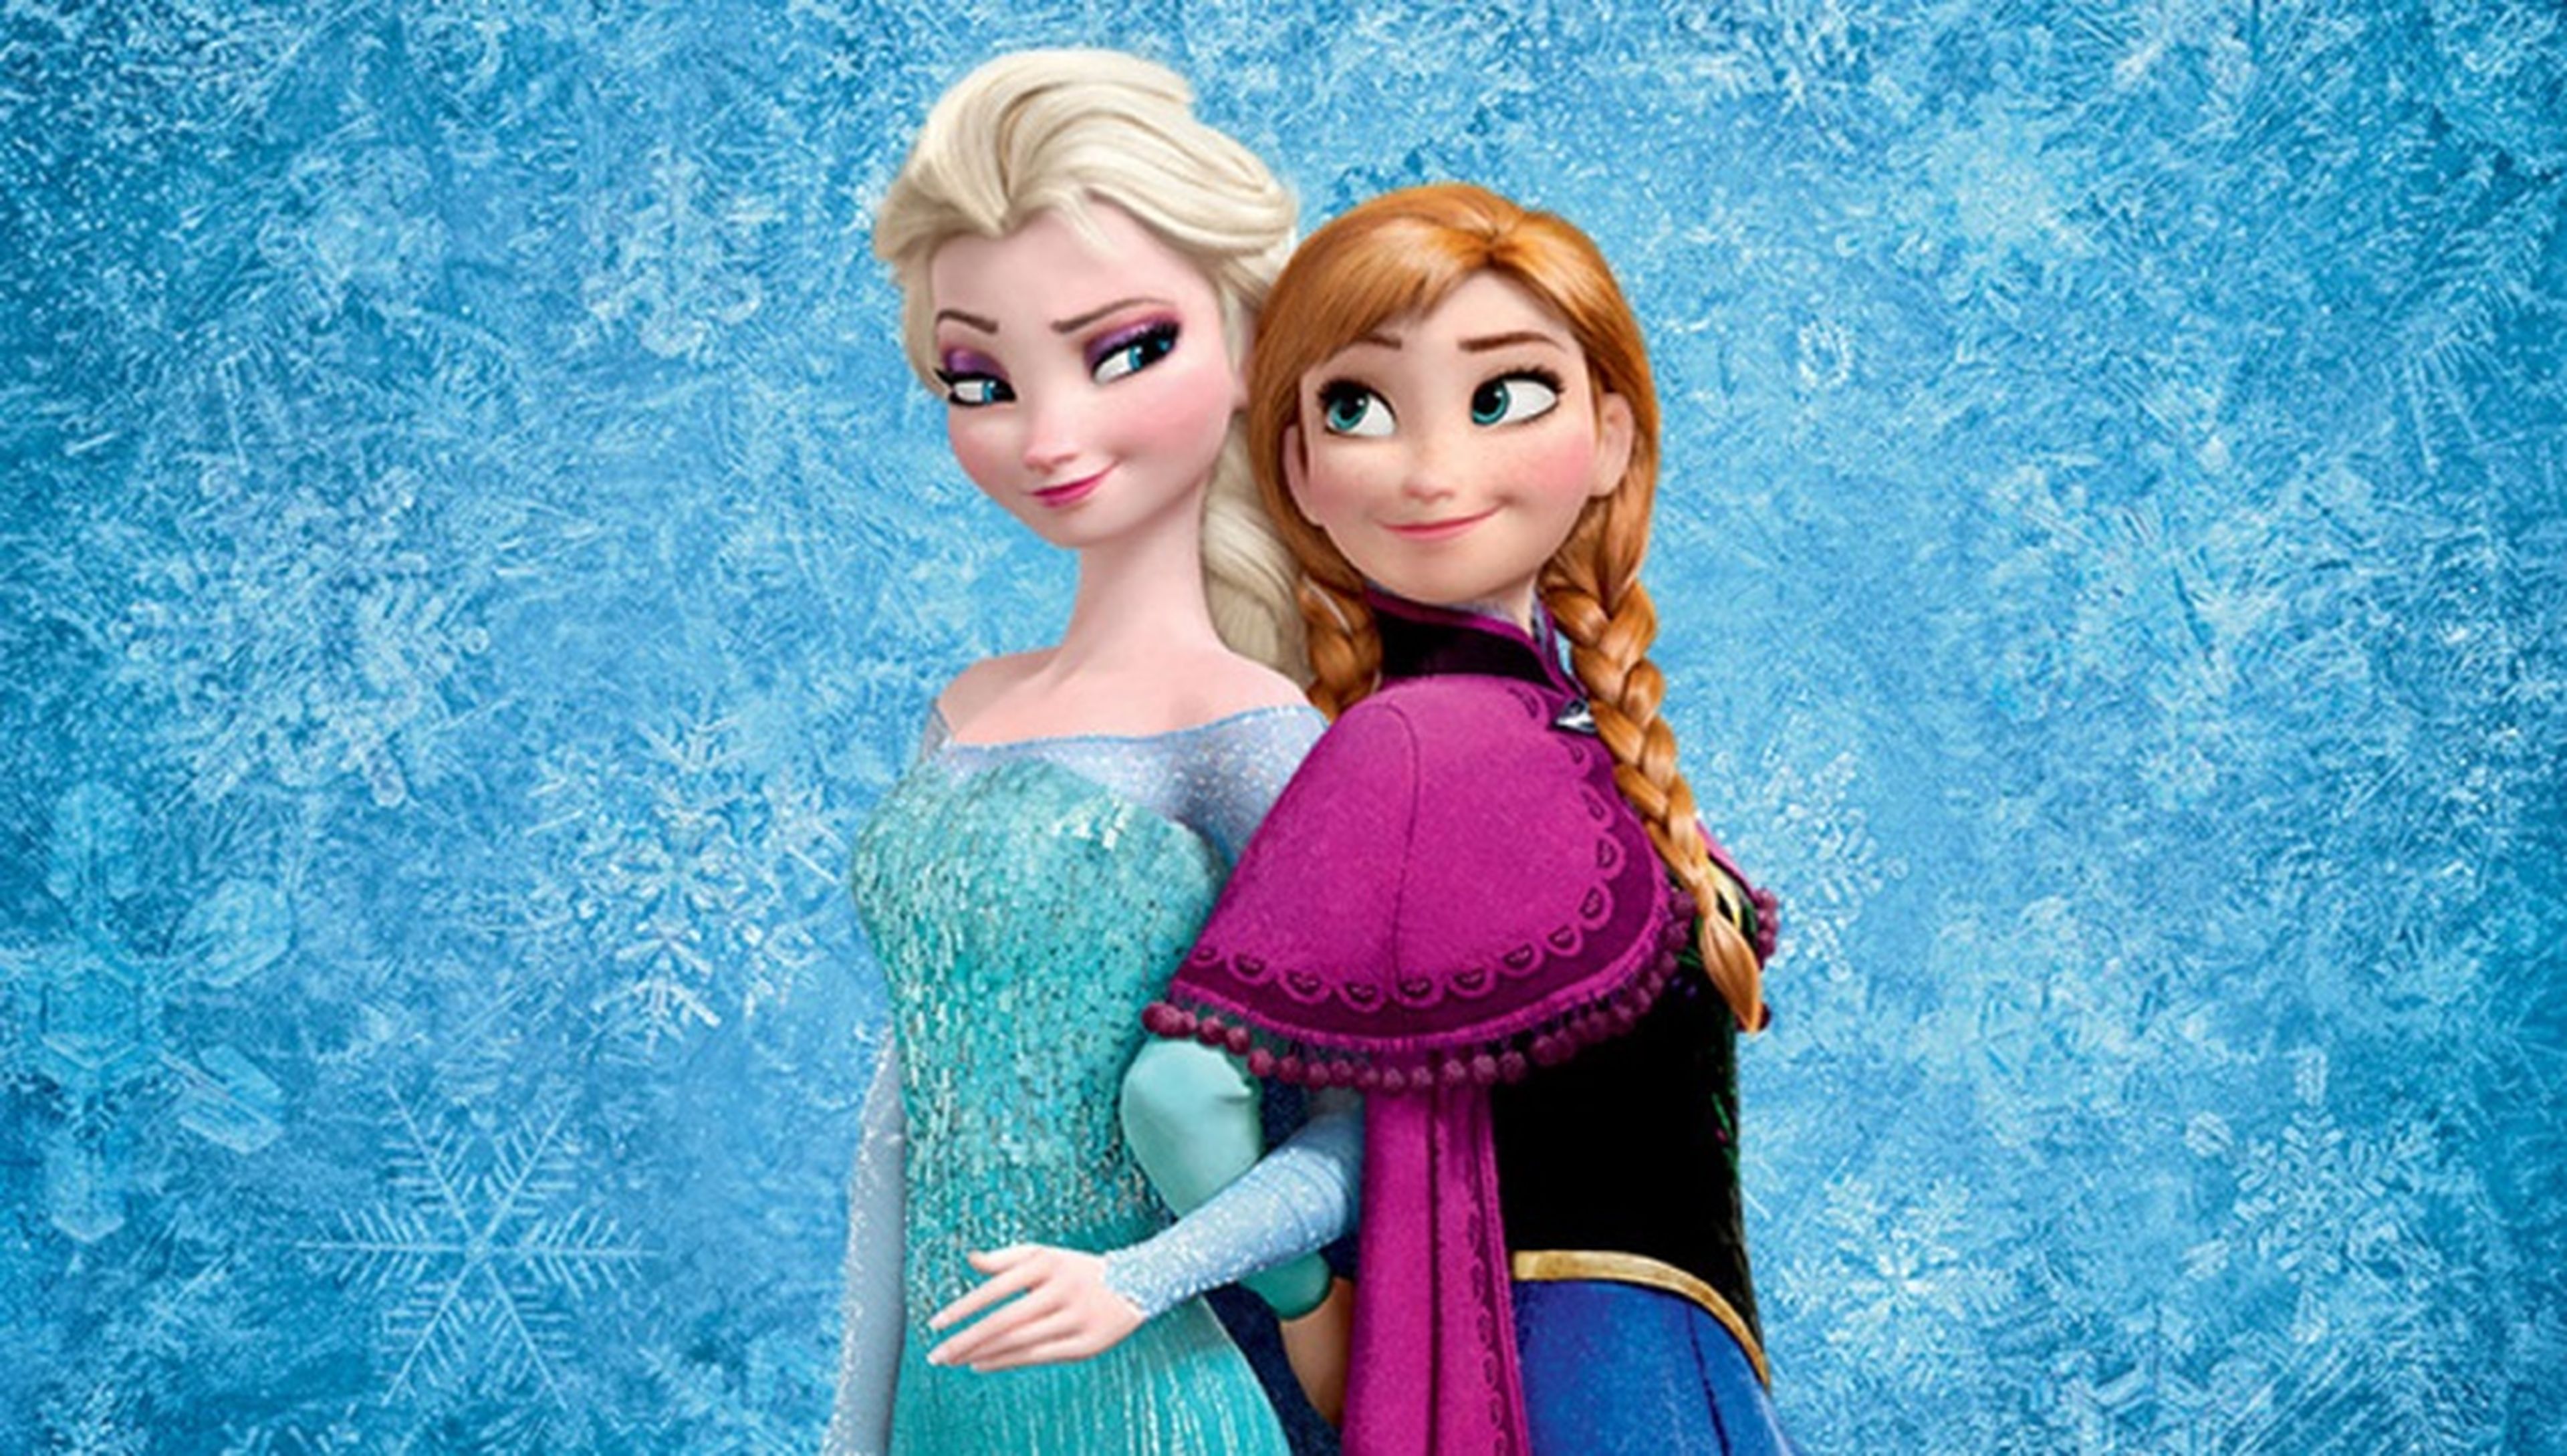 Frozen tendrá secuela en 2019